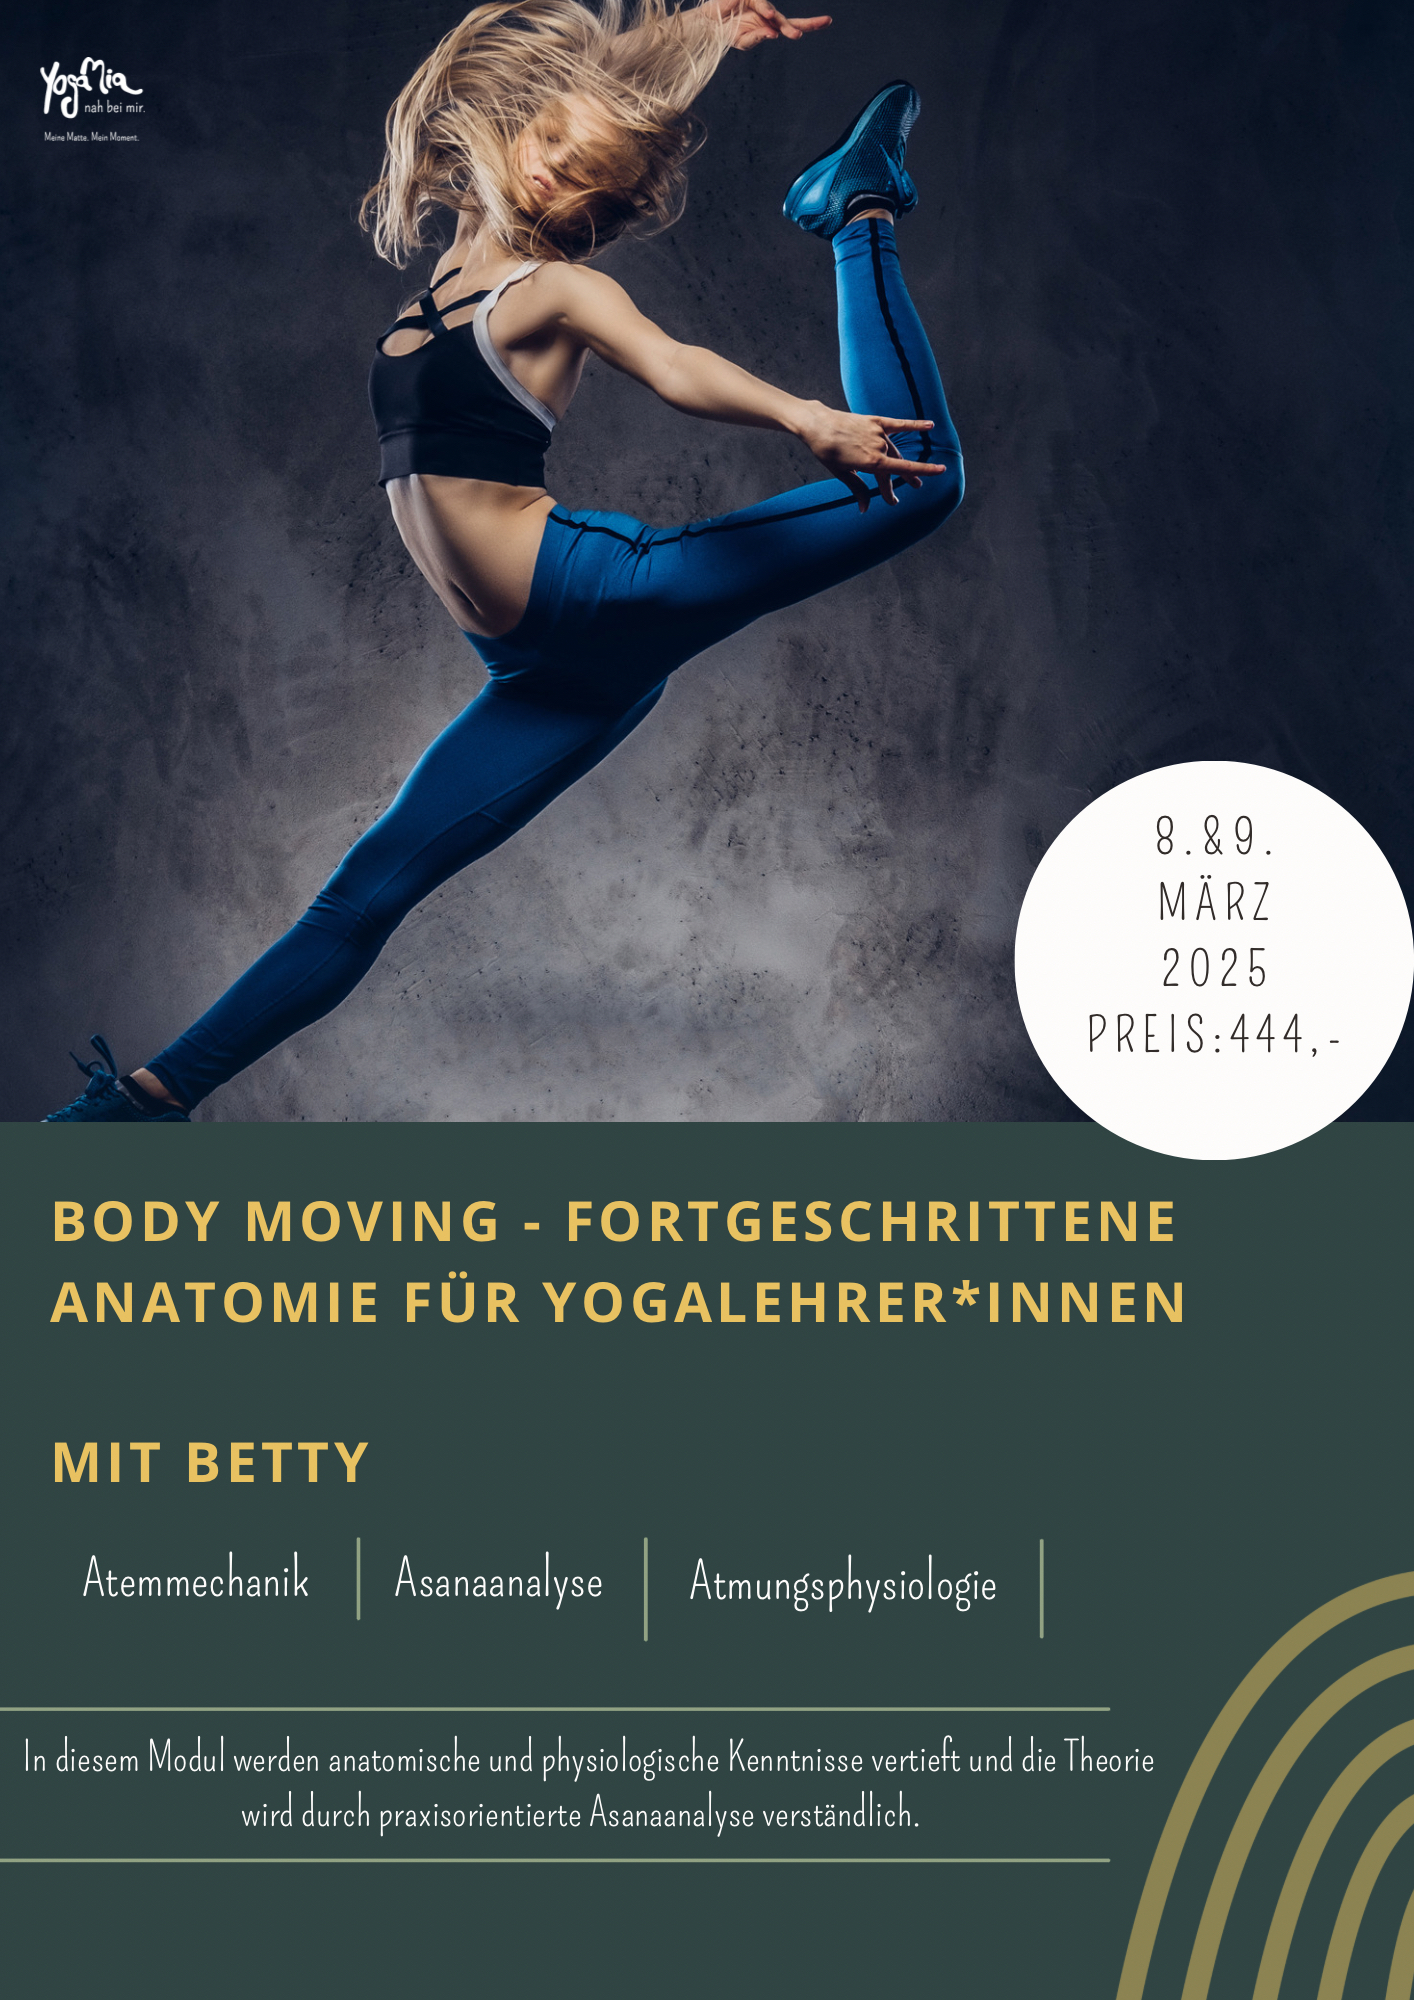 Body Moving - Fortgeschrittene Anatomie für Yogalehrer*innen mit Betty